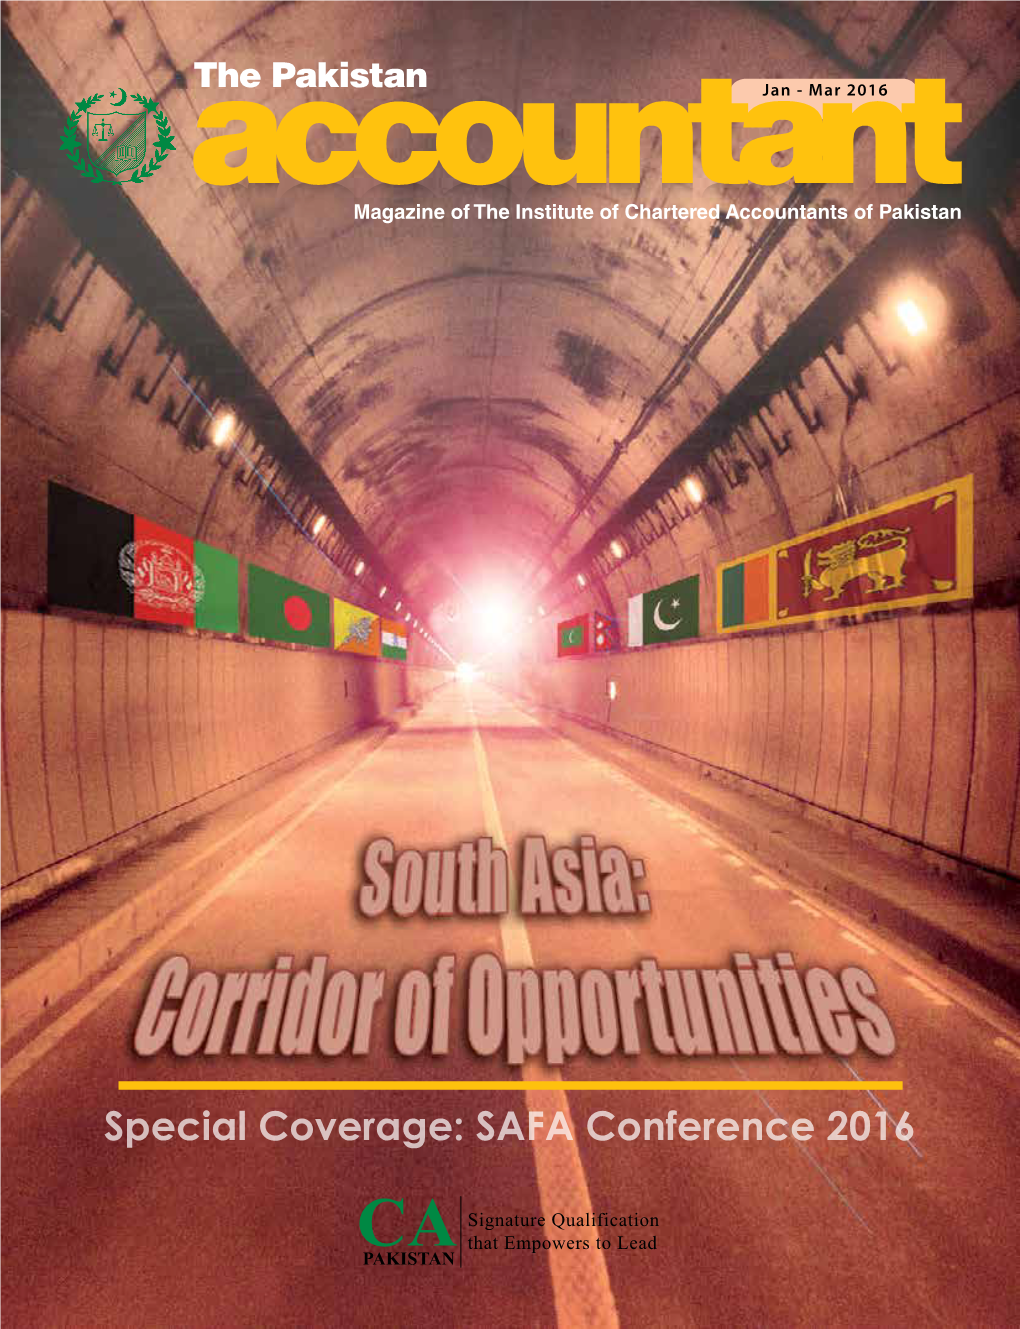 SAFA Conference 2016